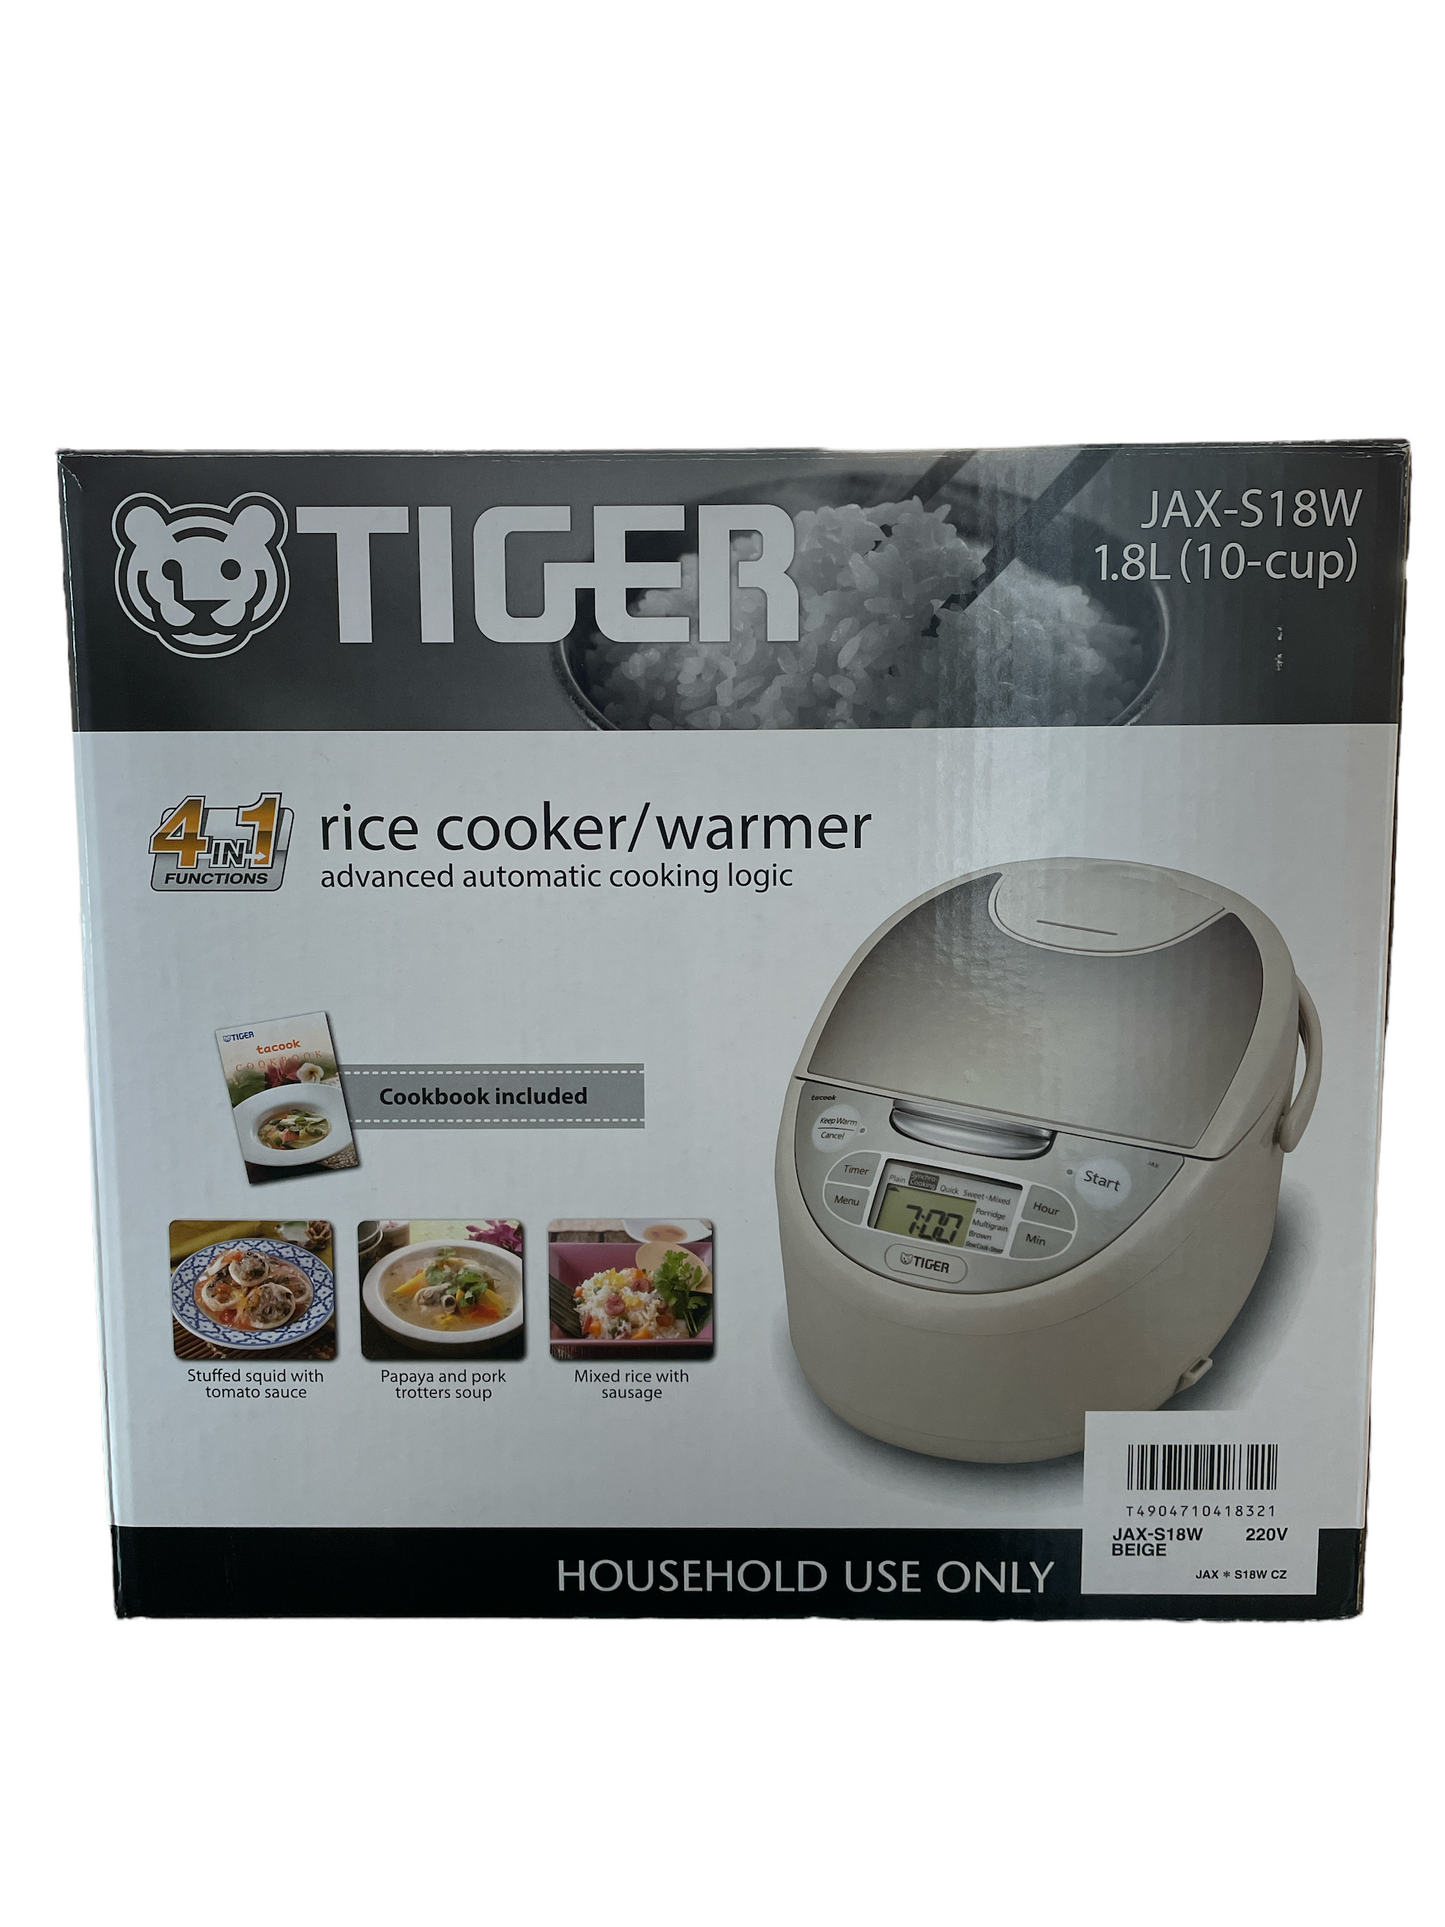 TIGER Rice Cooker JAX-S18W CZ 1.8L (10-cup)